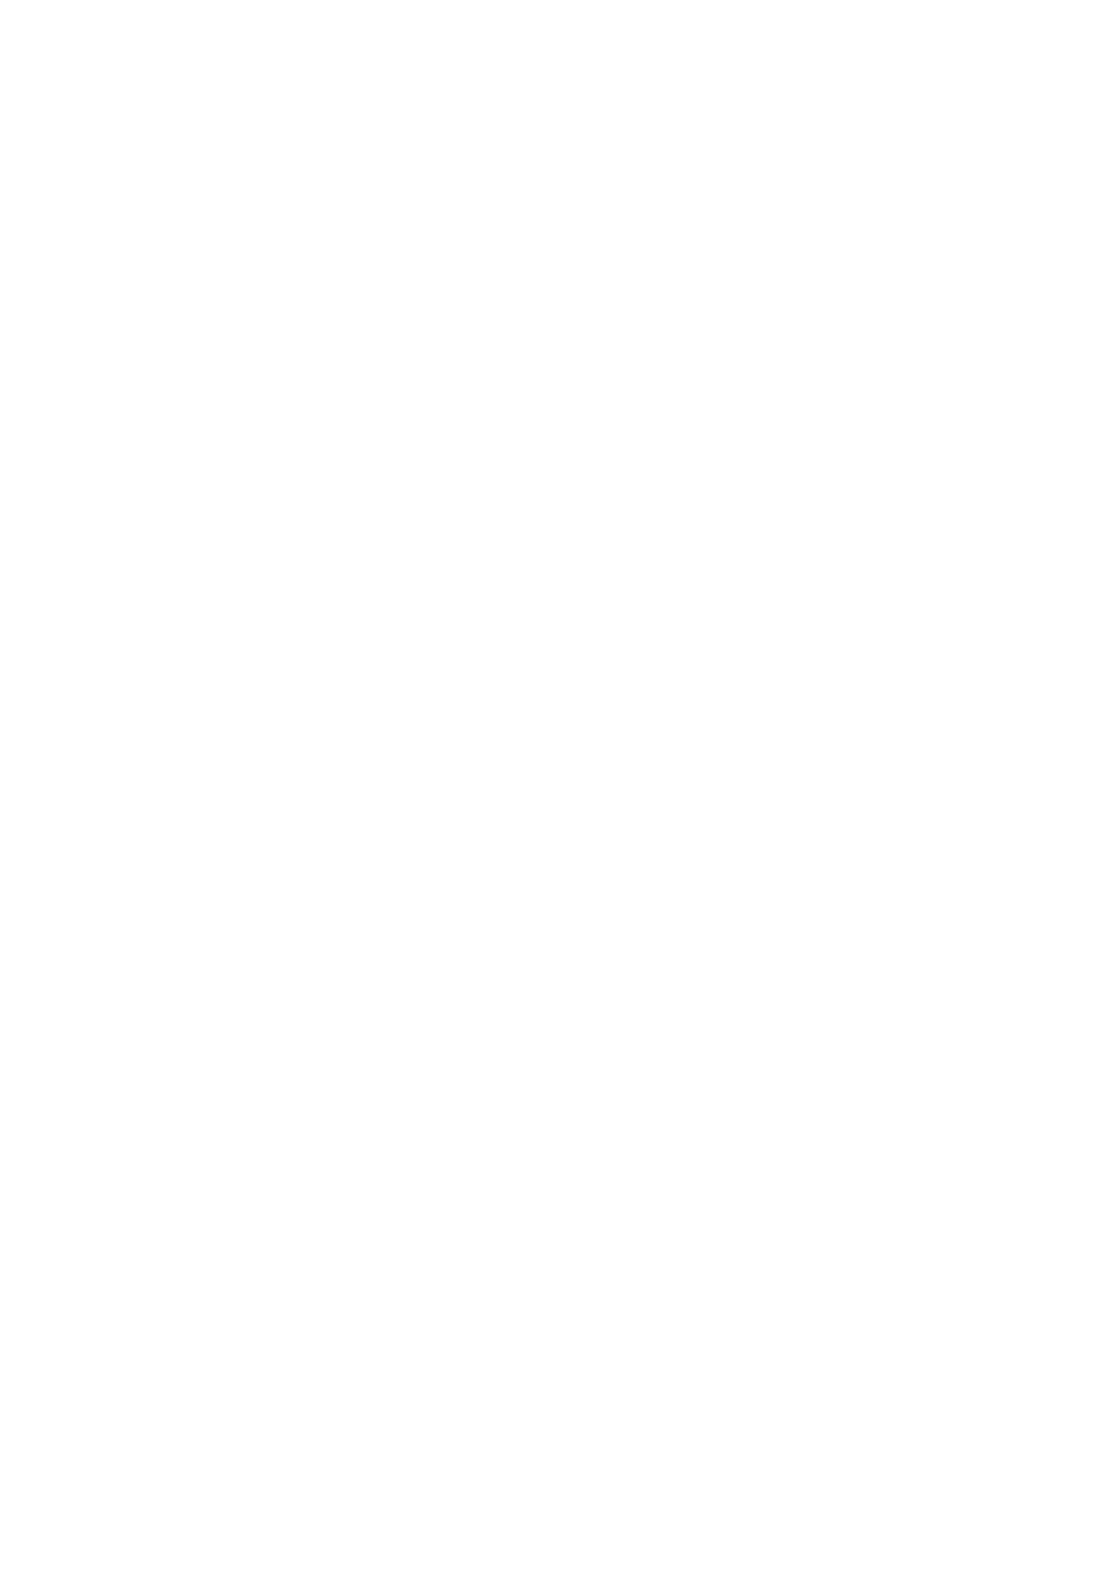 Singapore Land logo pour fonds sombres (PNG transparent)